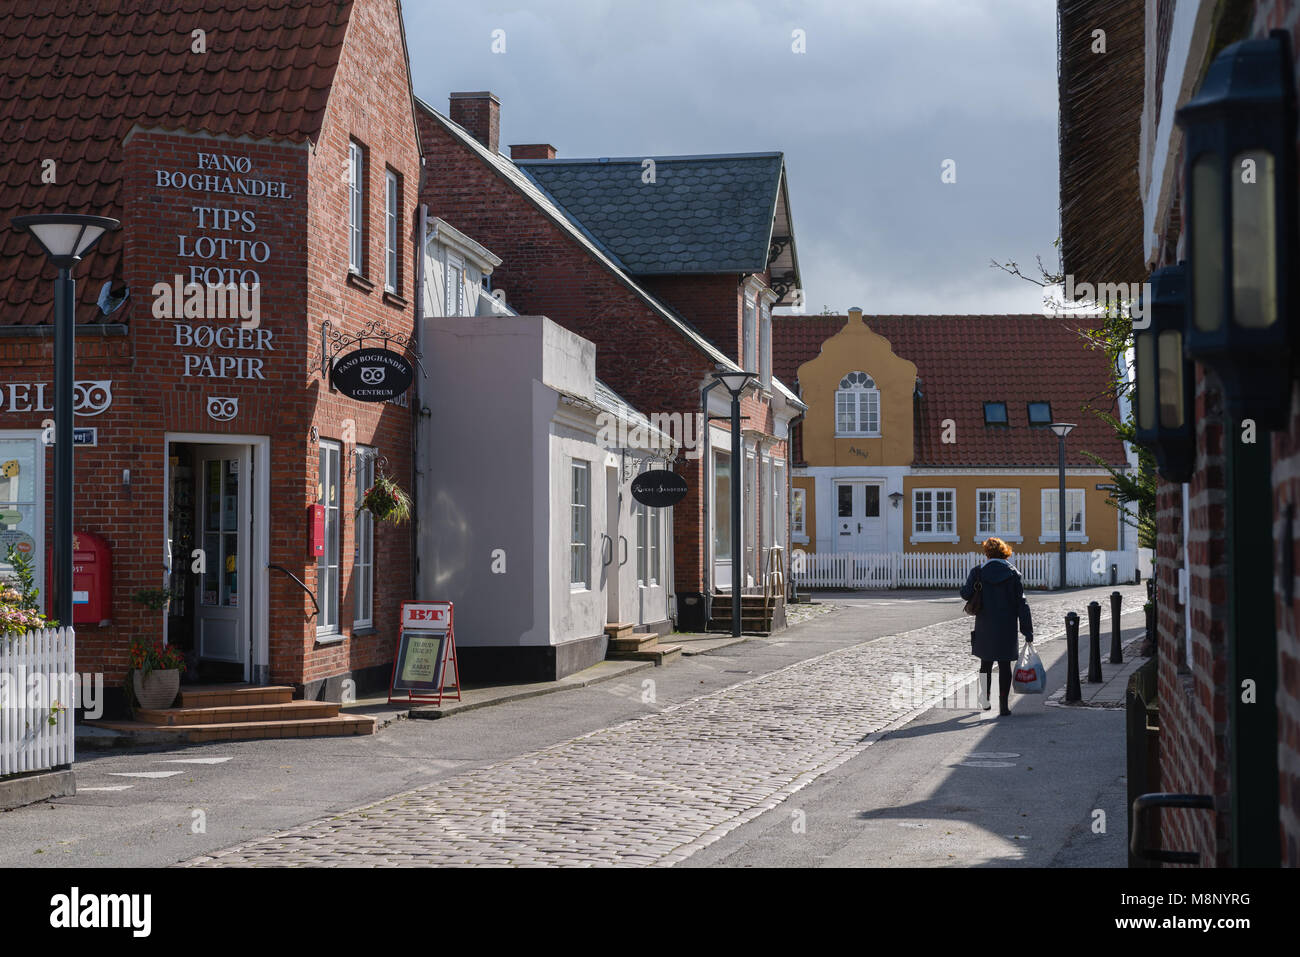 Cobble stone street dans le centre-ville, dans des maisons typiquement danois Nordby, île d'adresses importantes Tidevand Færgeruter Lufthavne Bil, Jutland, Danemark Banque D'Images